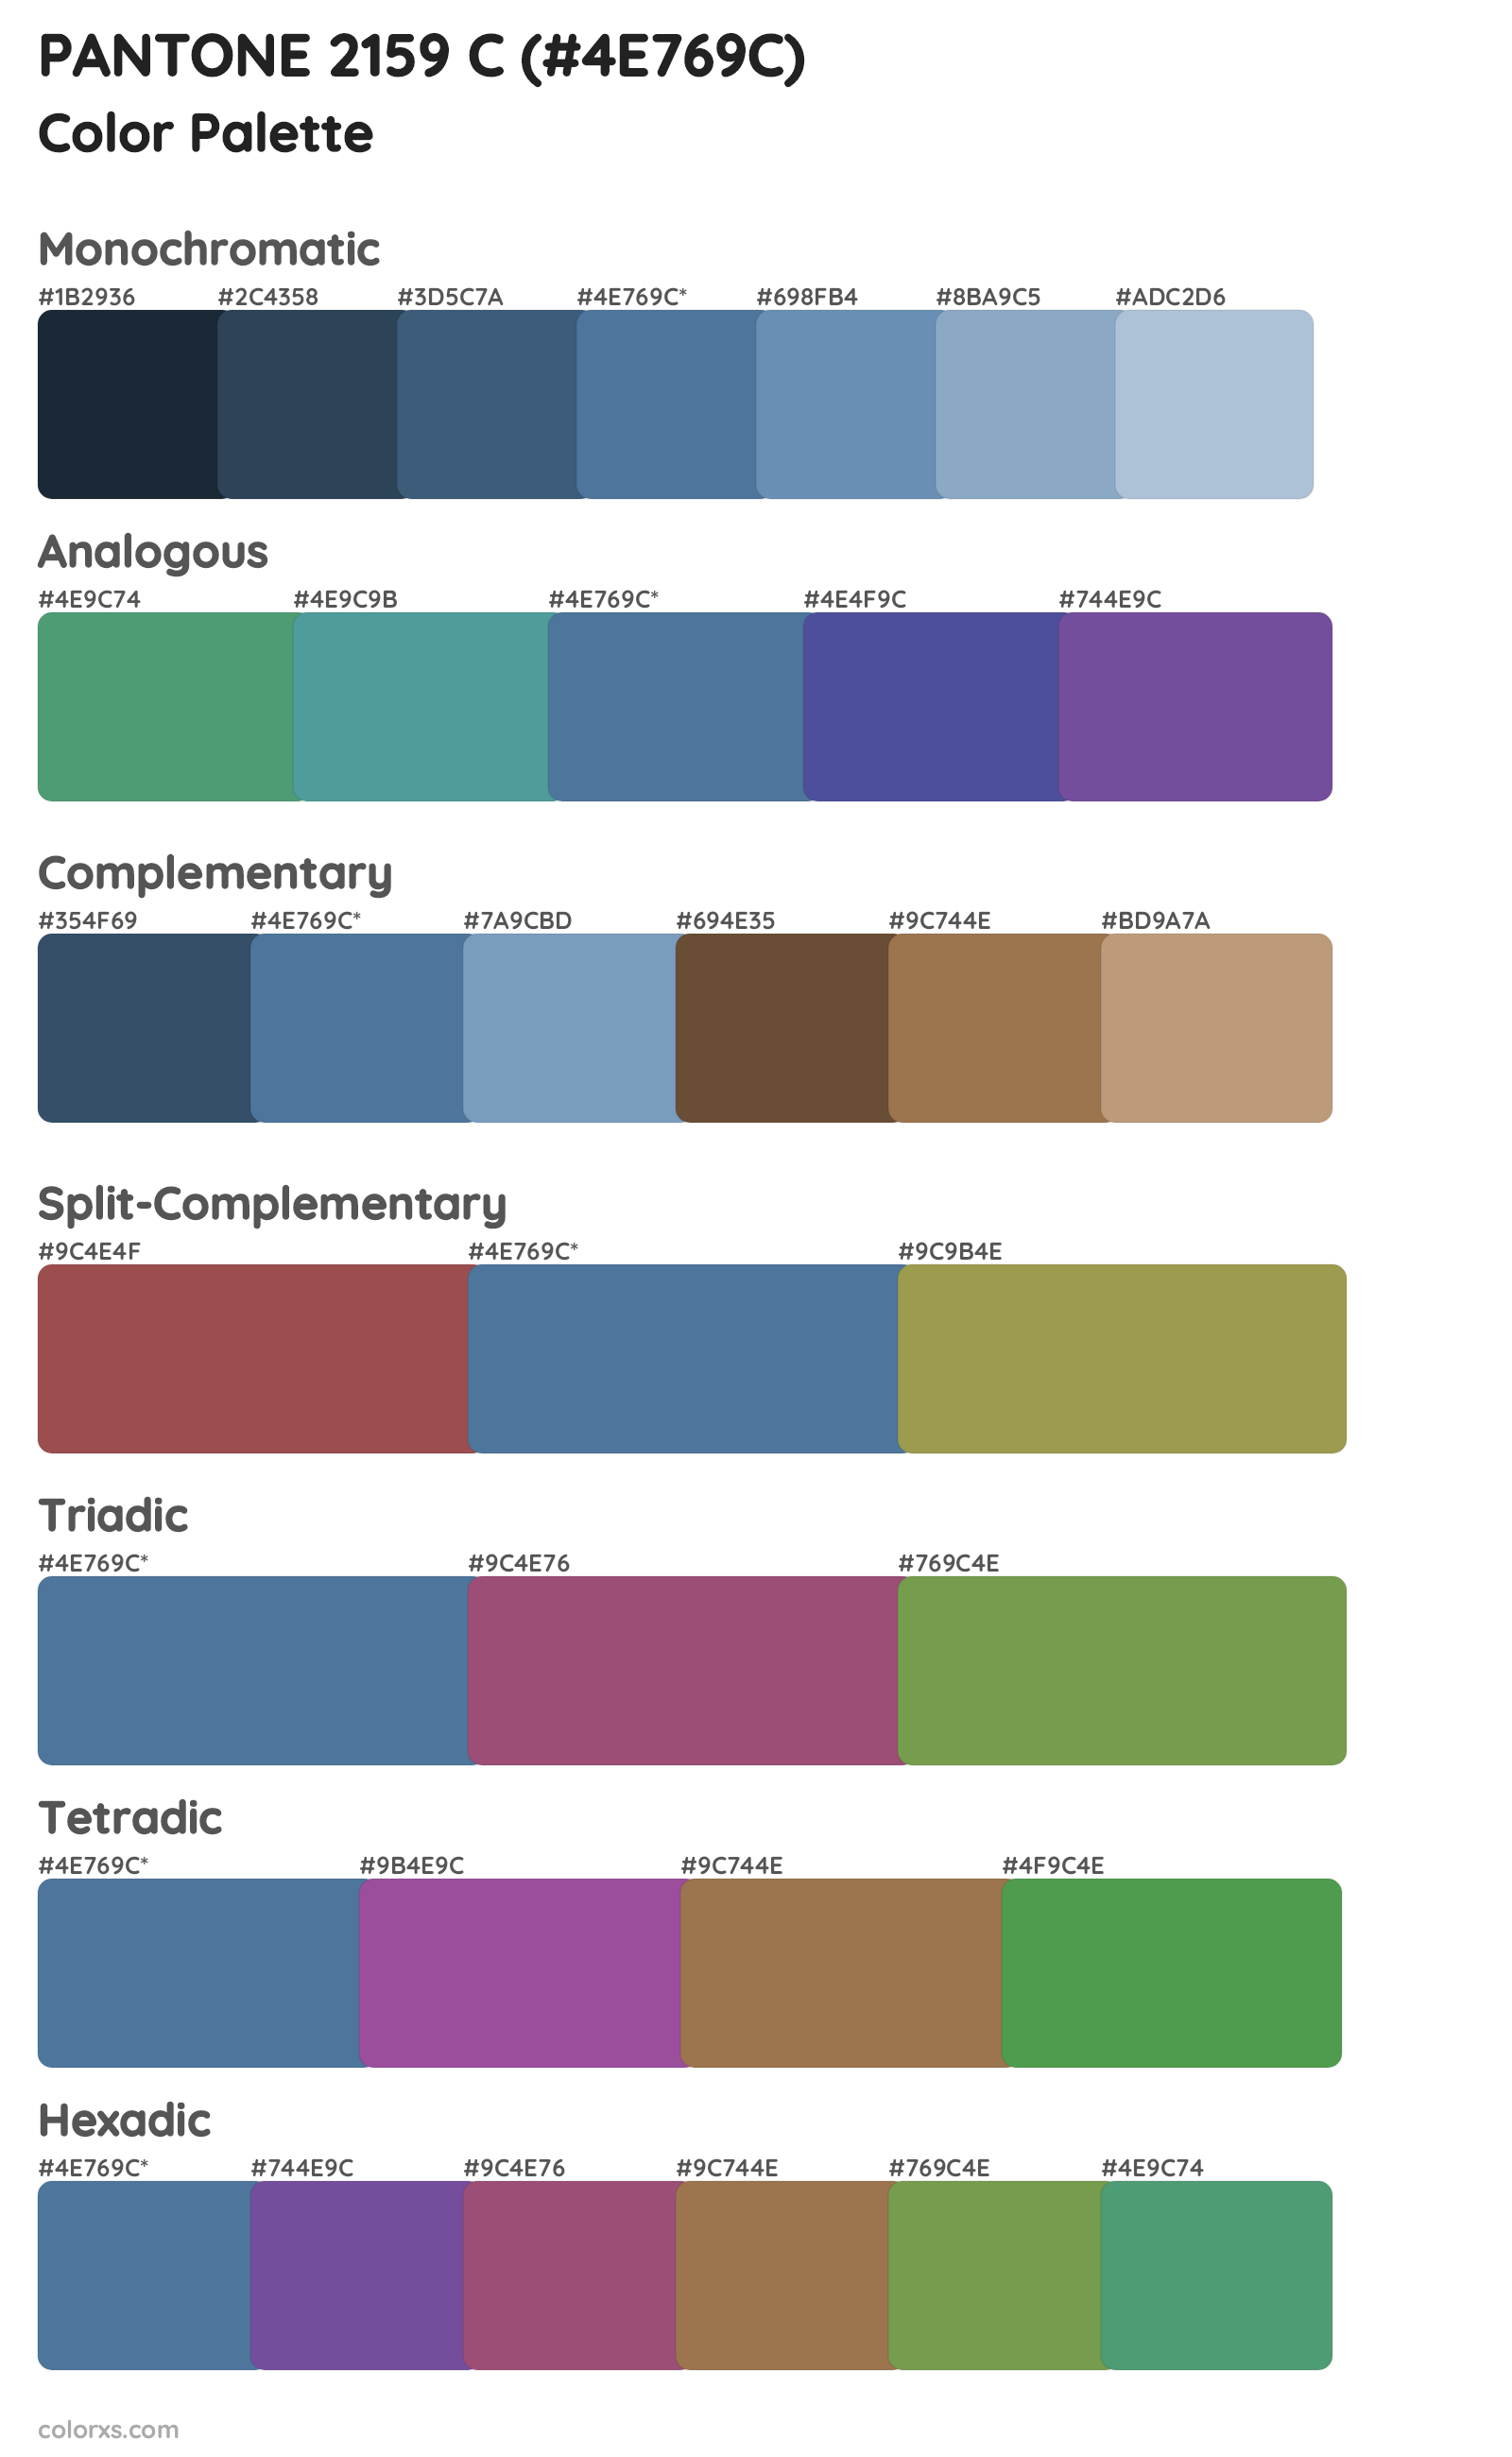 PANTONE 2159 C Color Scheme Palettes